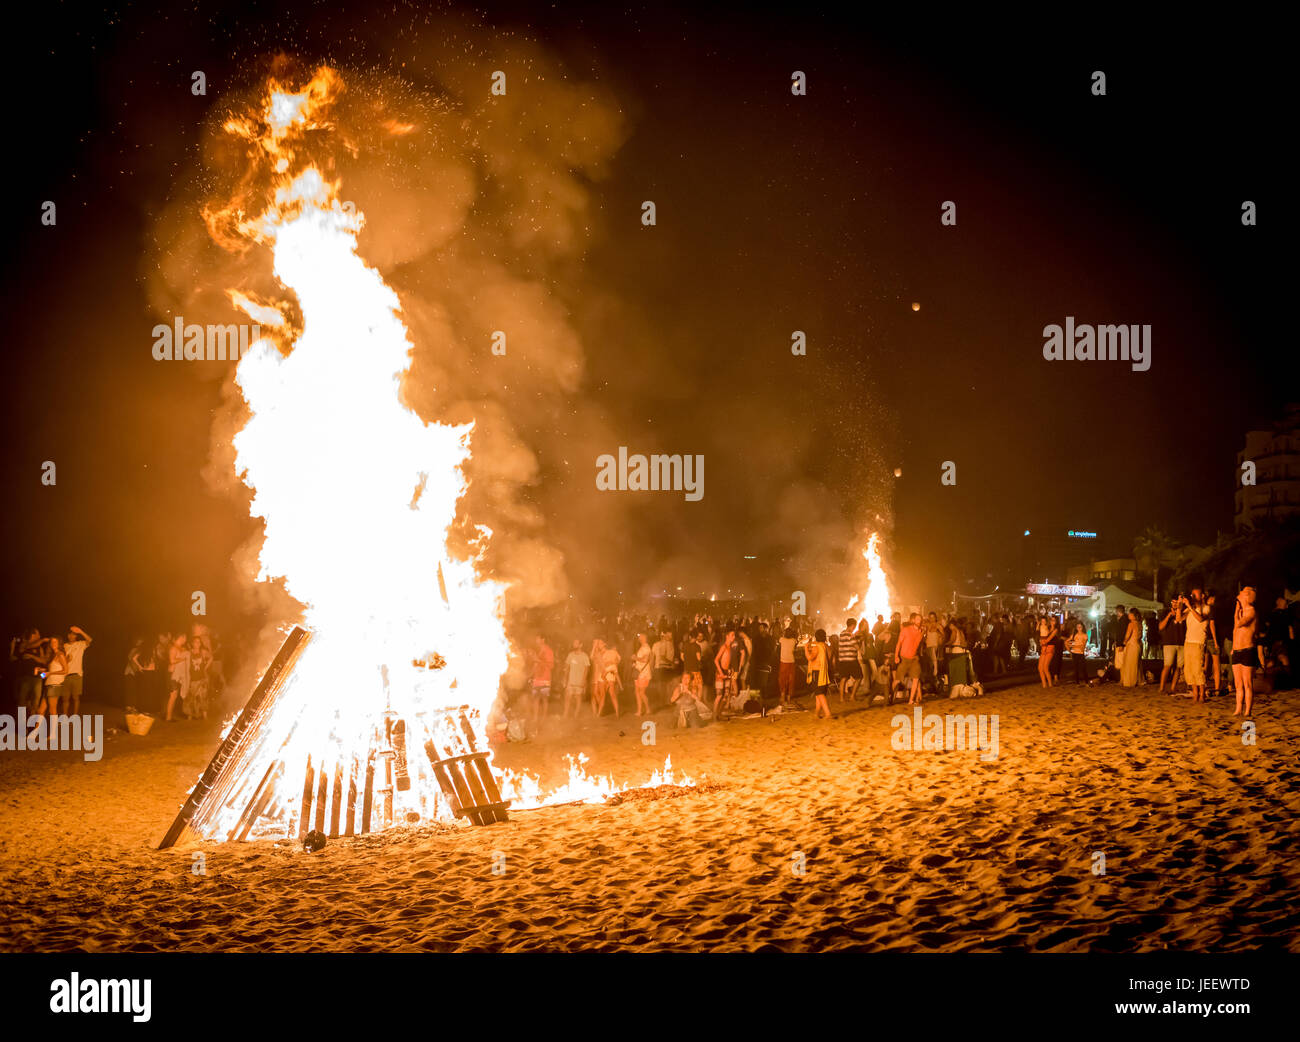 MARBELLA, España - Junio 23, 2017: Celebración de San Juan la playa en Marbella, Costa del Sol, España. Se encienden hogueras y Flaming linternas liberados a Fotografía de stock - Alamy